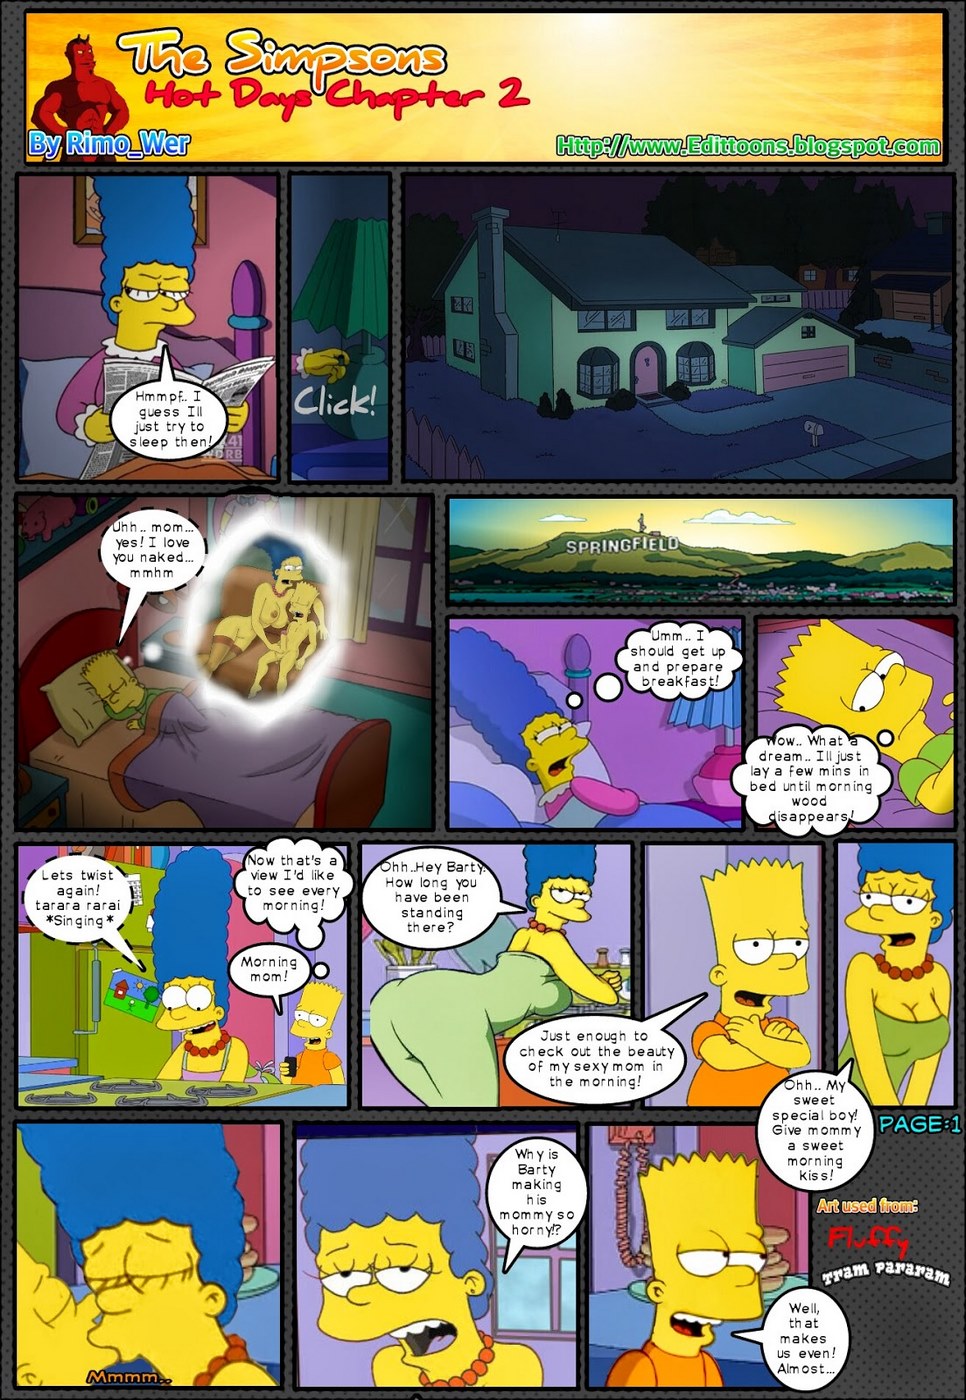 Porn Comics - Simpsons Hot Days chapter 2 porn comics 8 muses